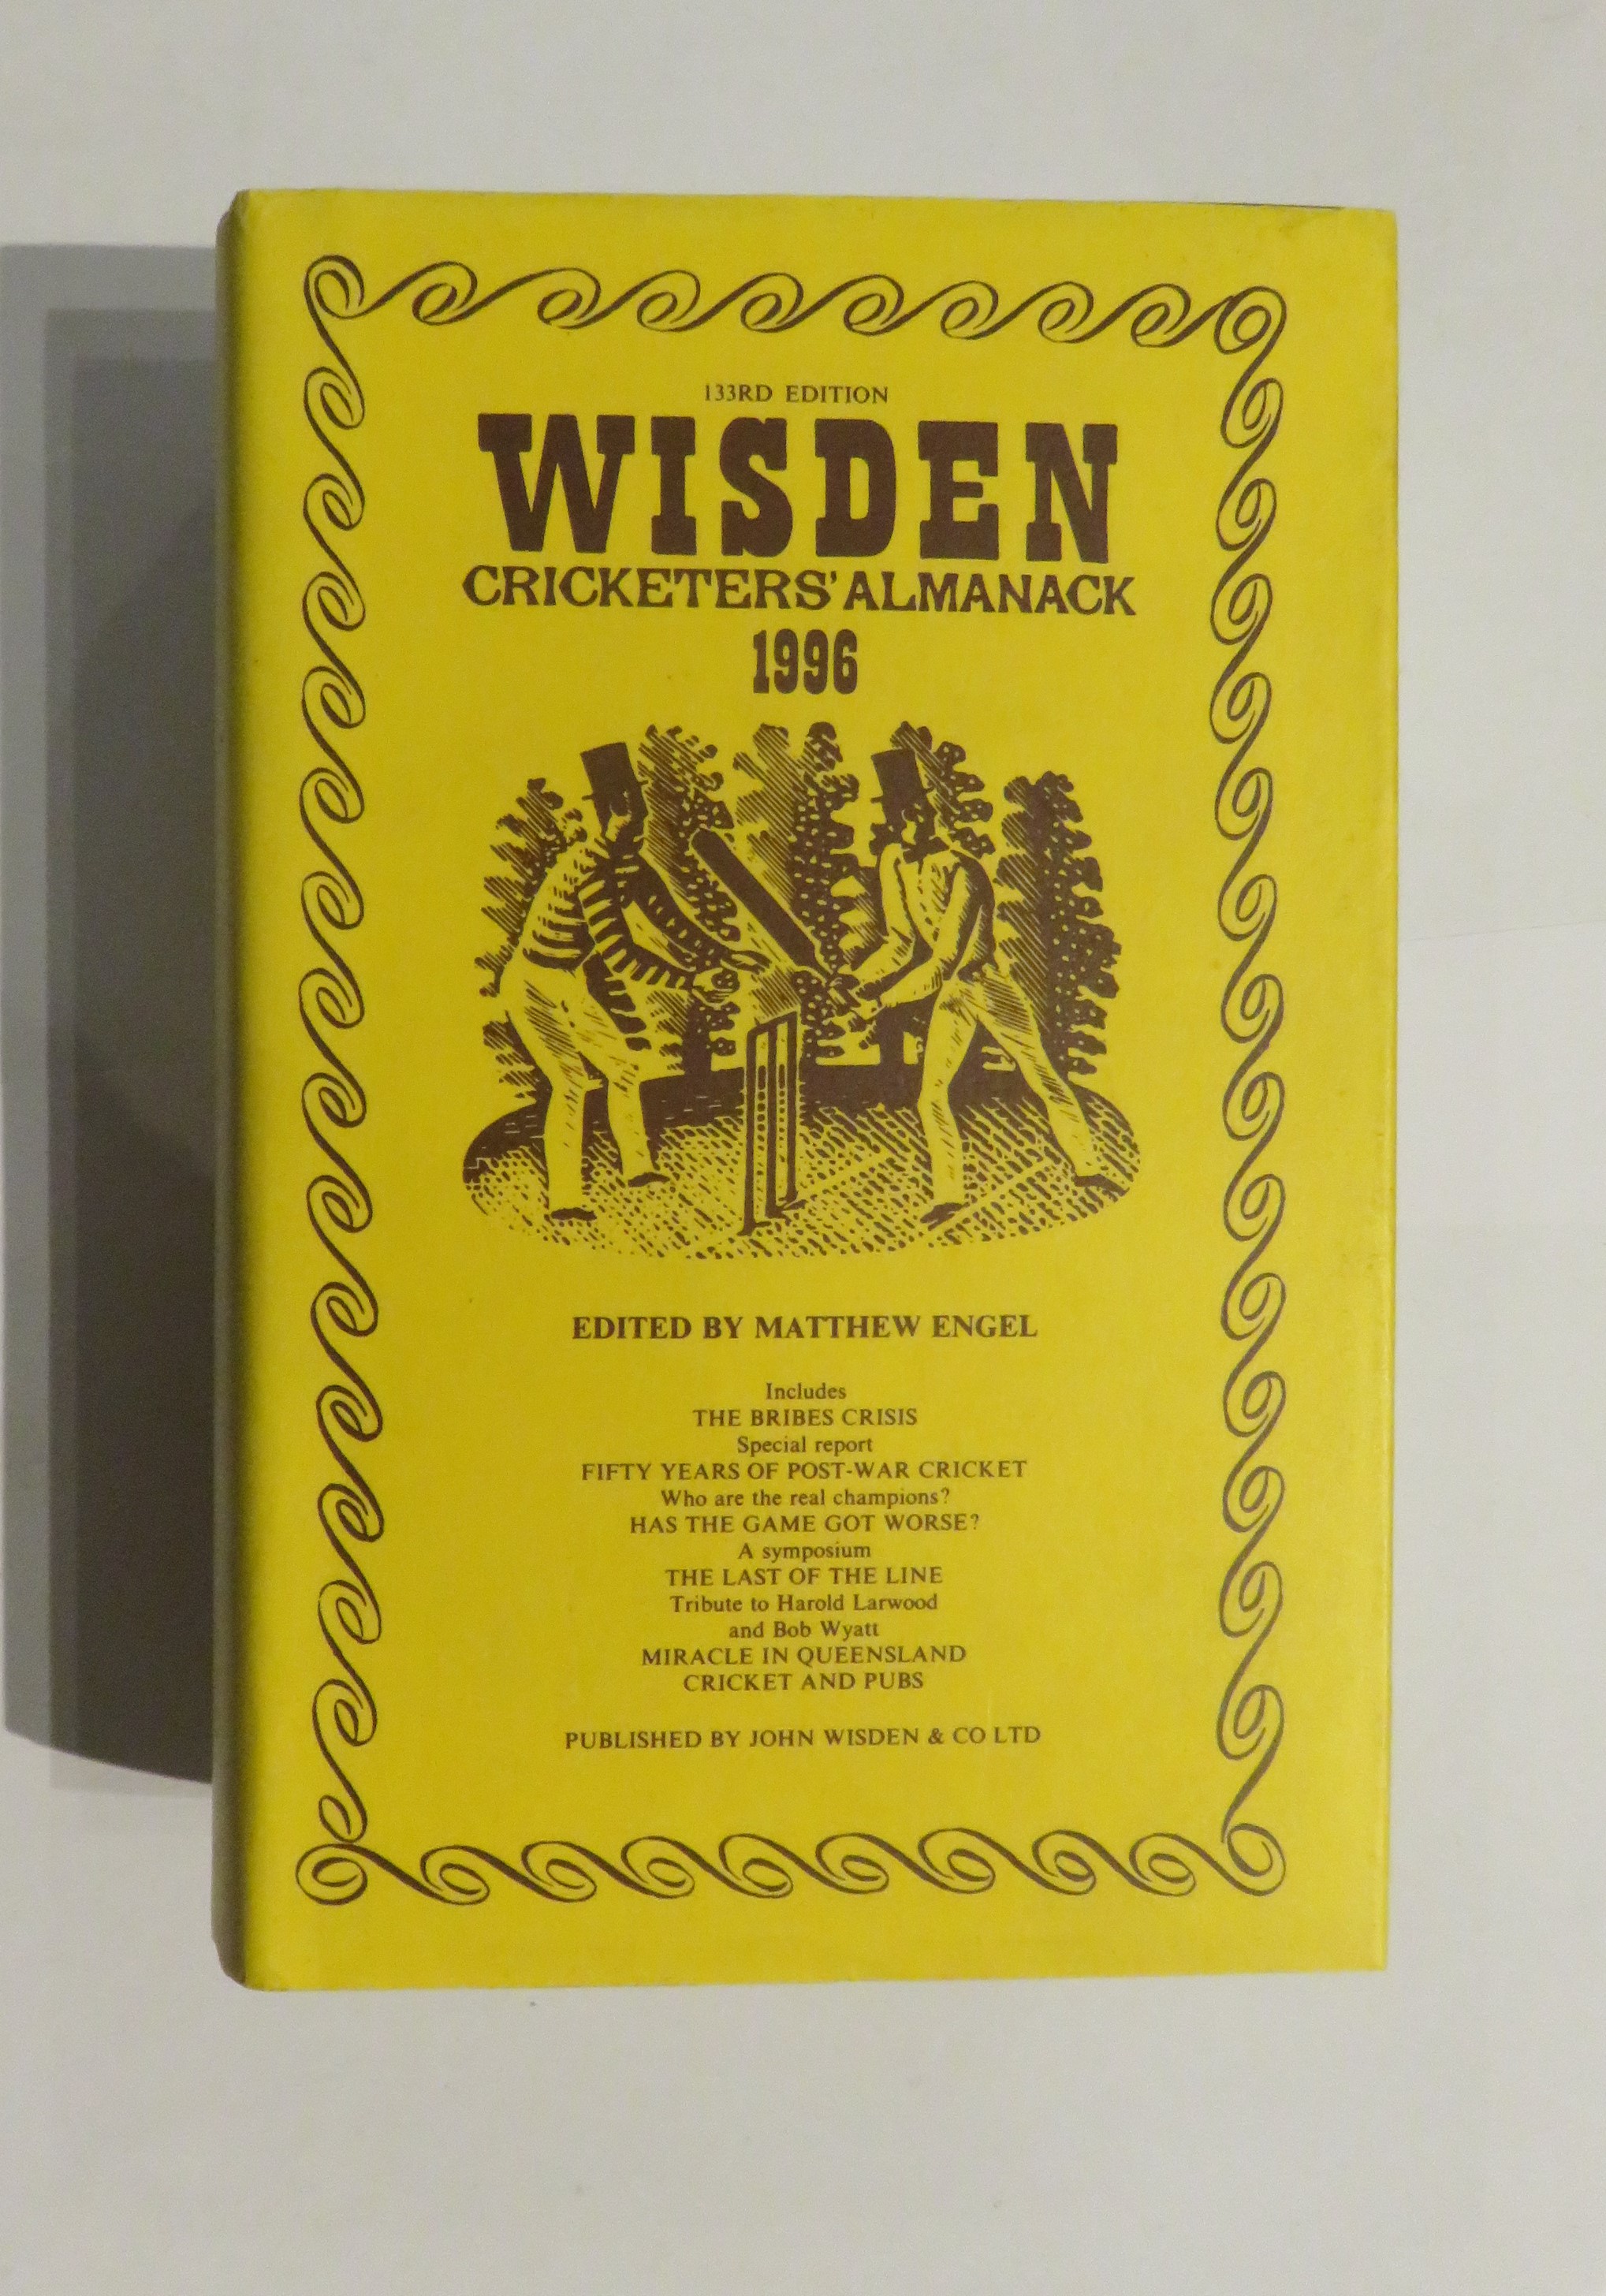 Wisden Cricketers' Almanack 1996